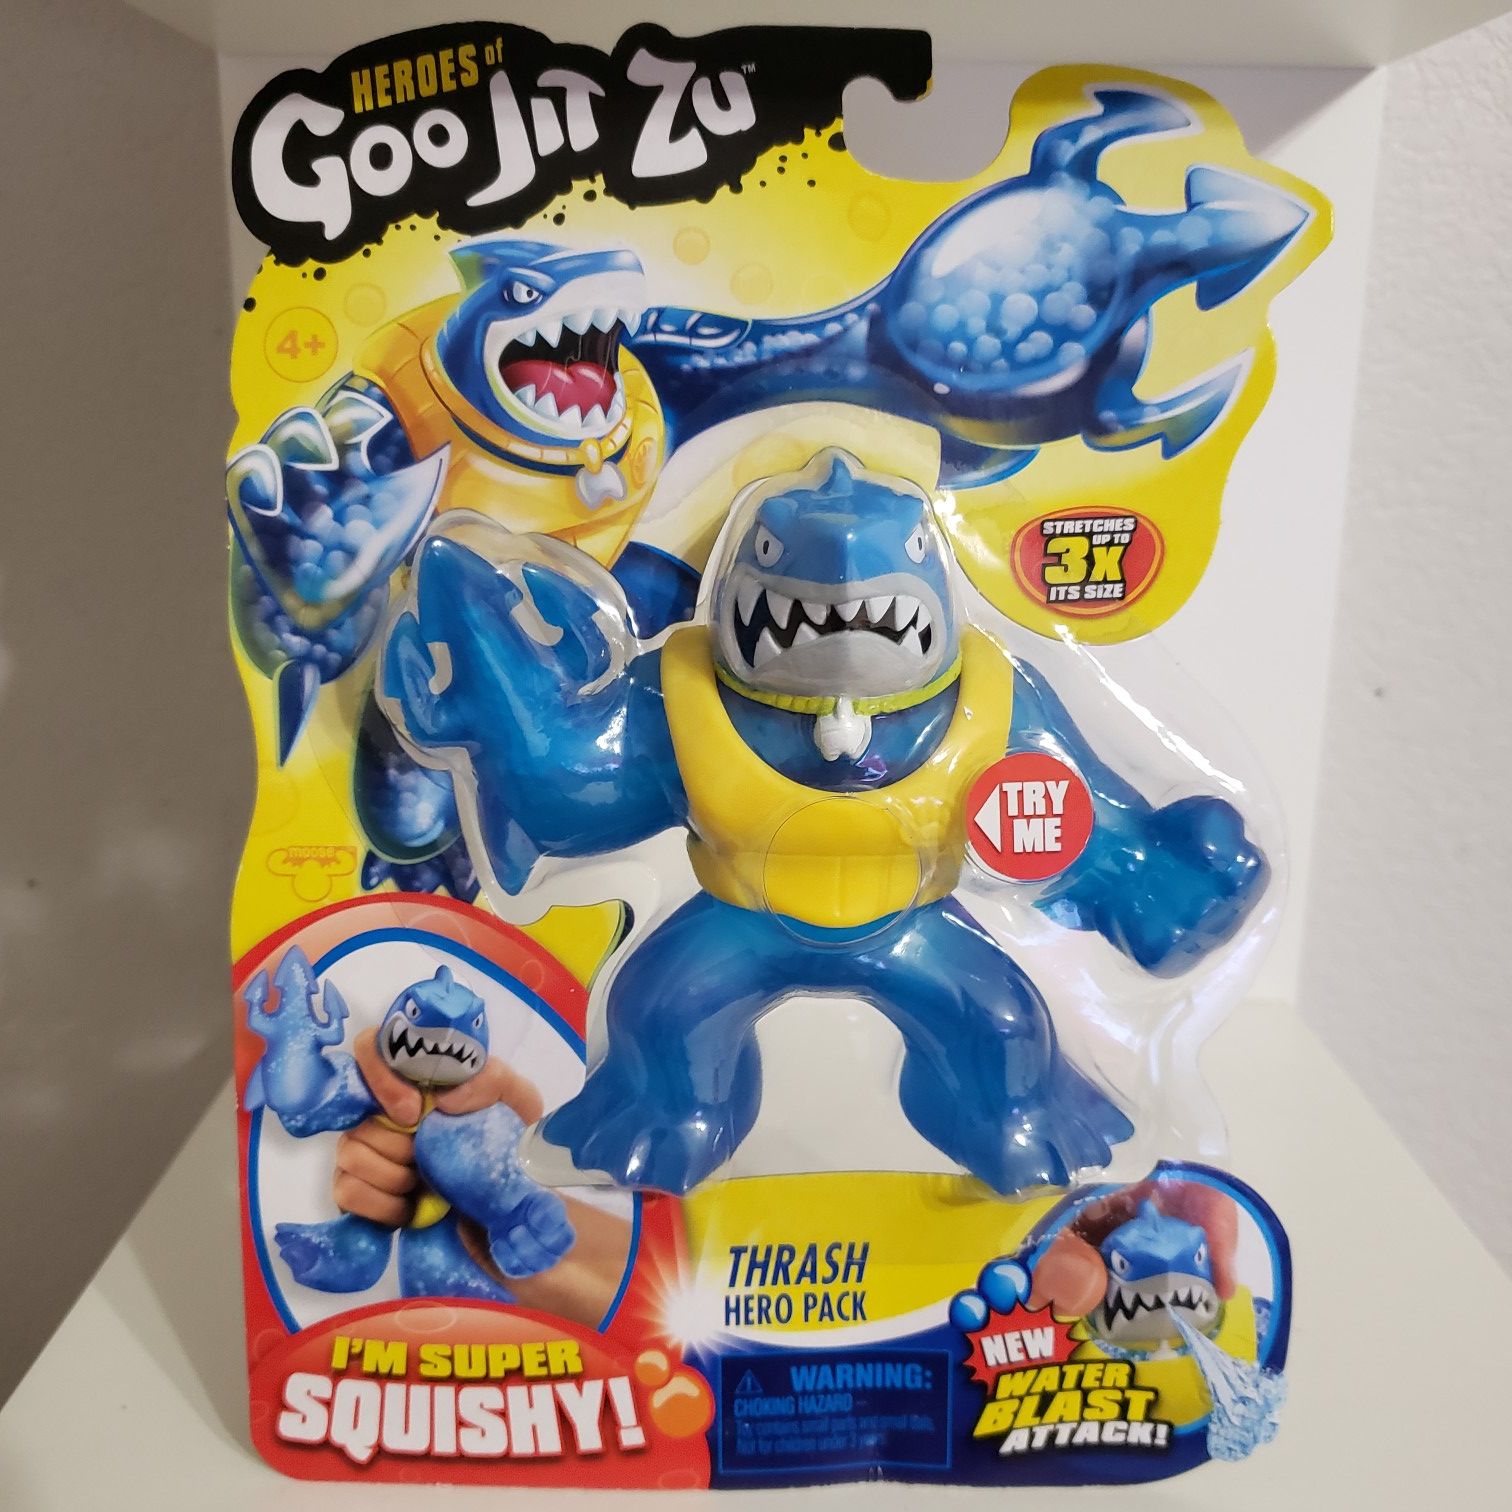 Heroes of Goo Jit Zu "Thrash The Shark"